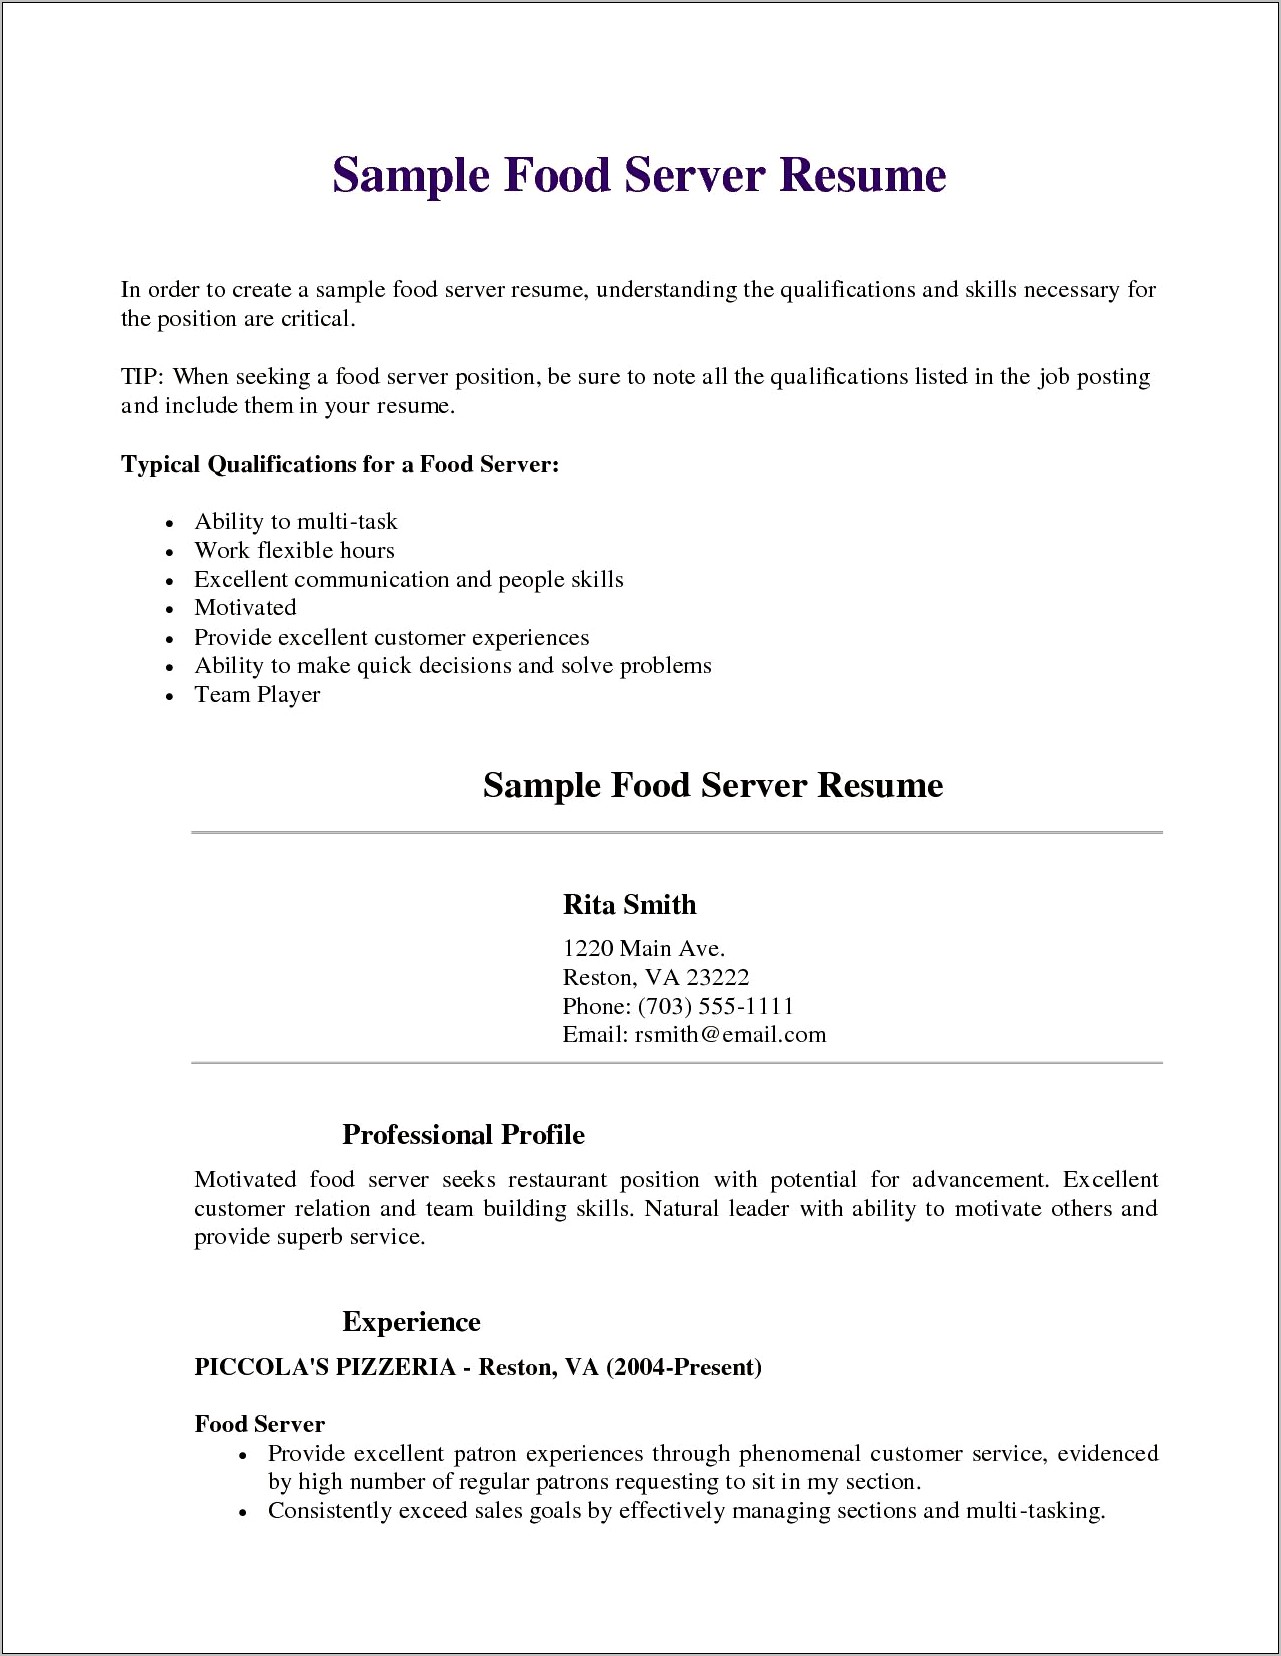 Resume Skills For Server Position